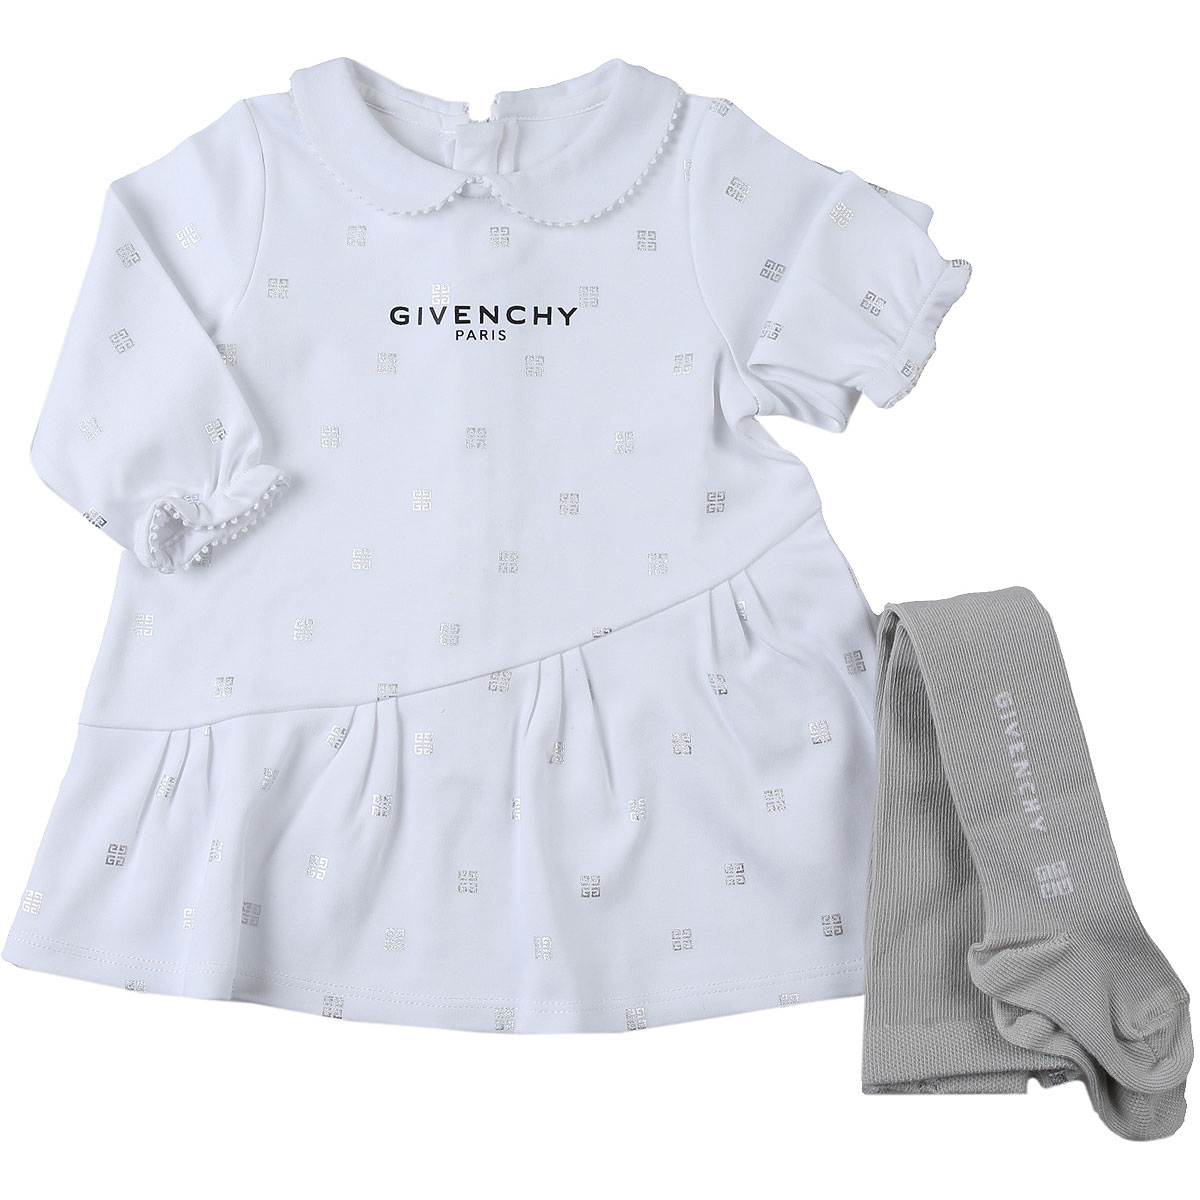 Givenchy Baby Set für Mädchen Günstig im Sale, Weiss, Baumwolle, 2017, 12M 3M 6M 9M